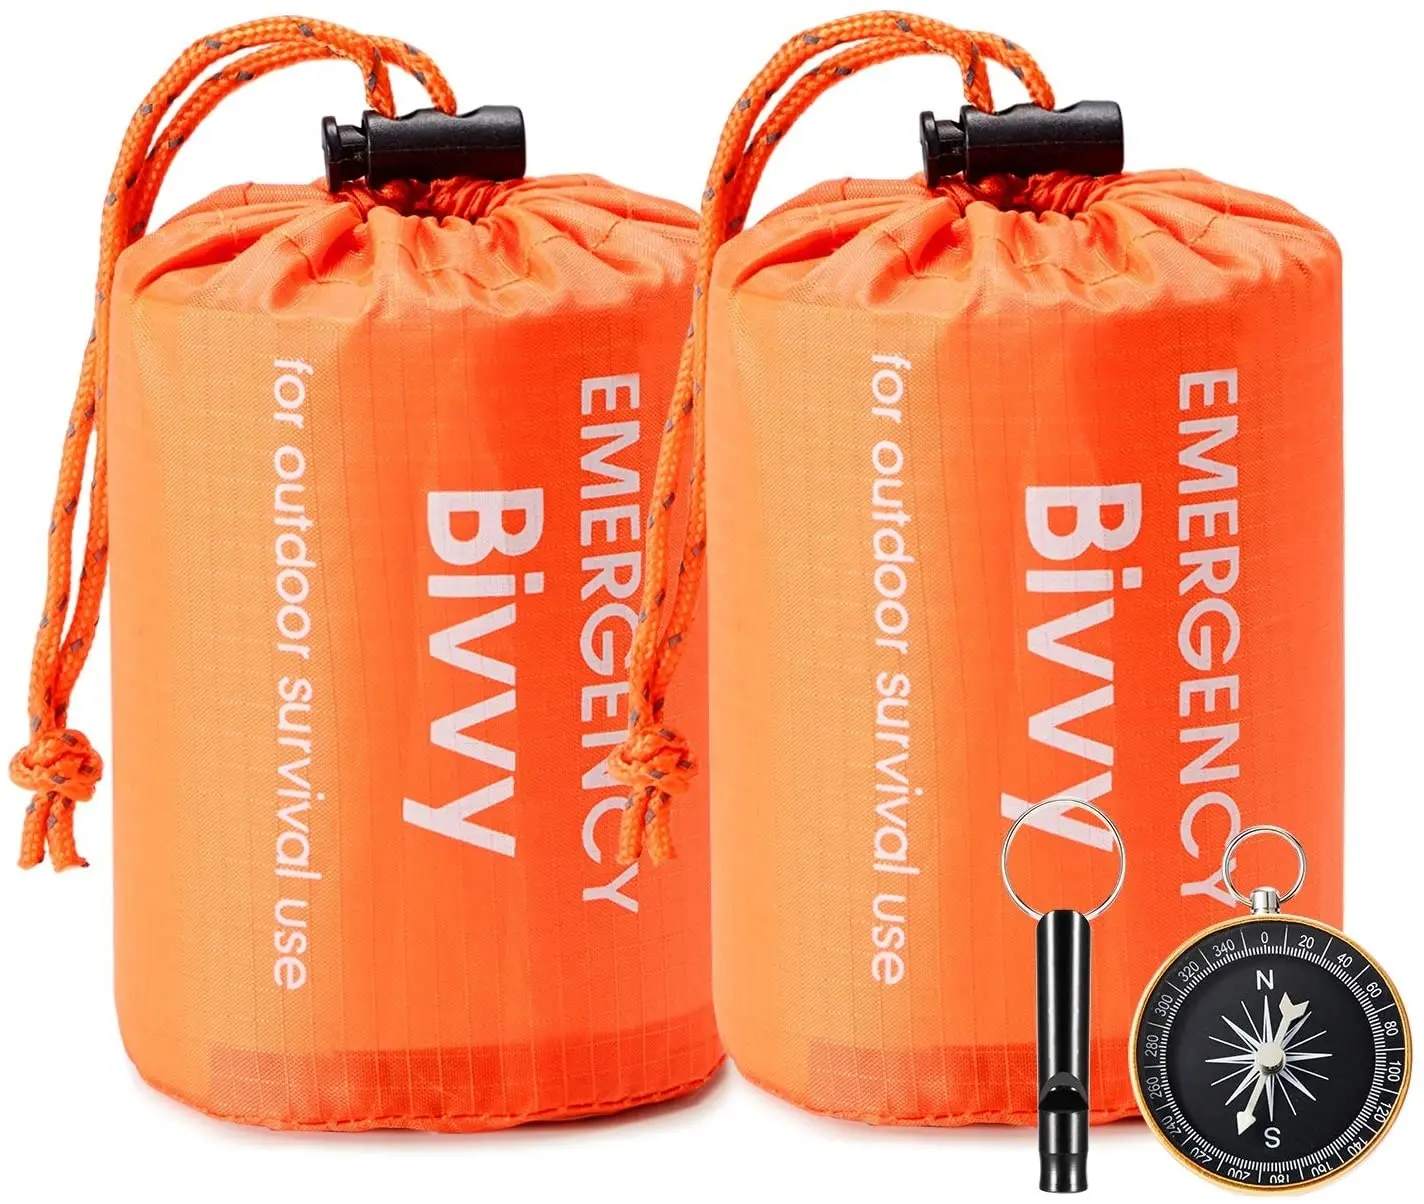 OEM waterproof Ultralight Orange PE thermal mylar outdoor camping survival gear emergency sleeping bag with Whistle